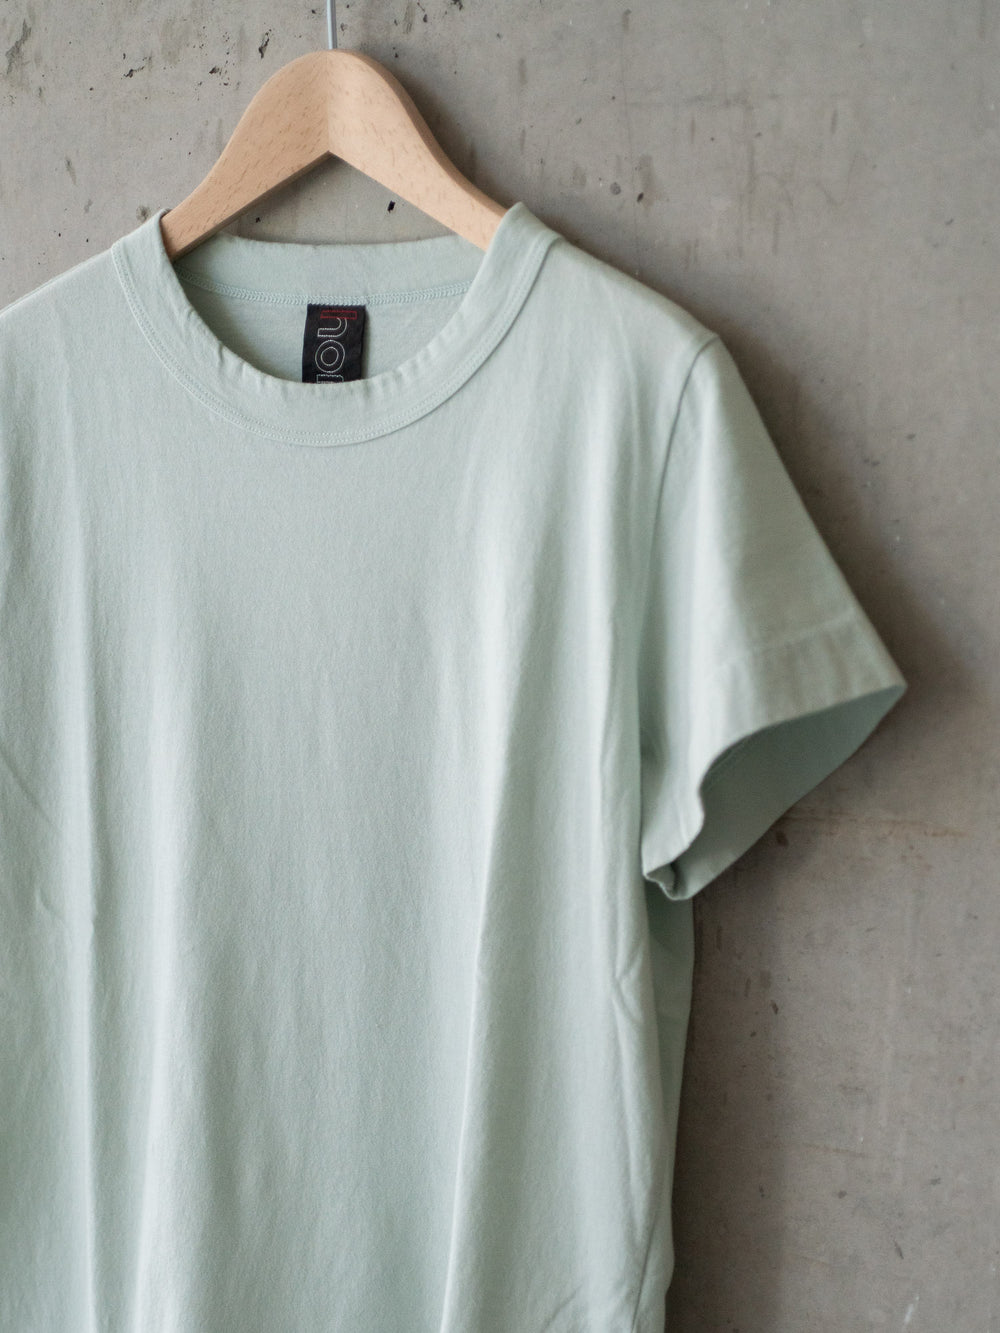 Short Sleeve T-Shirt – Light Sage